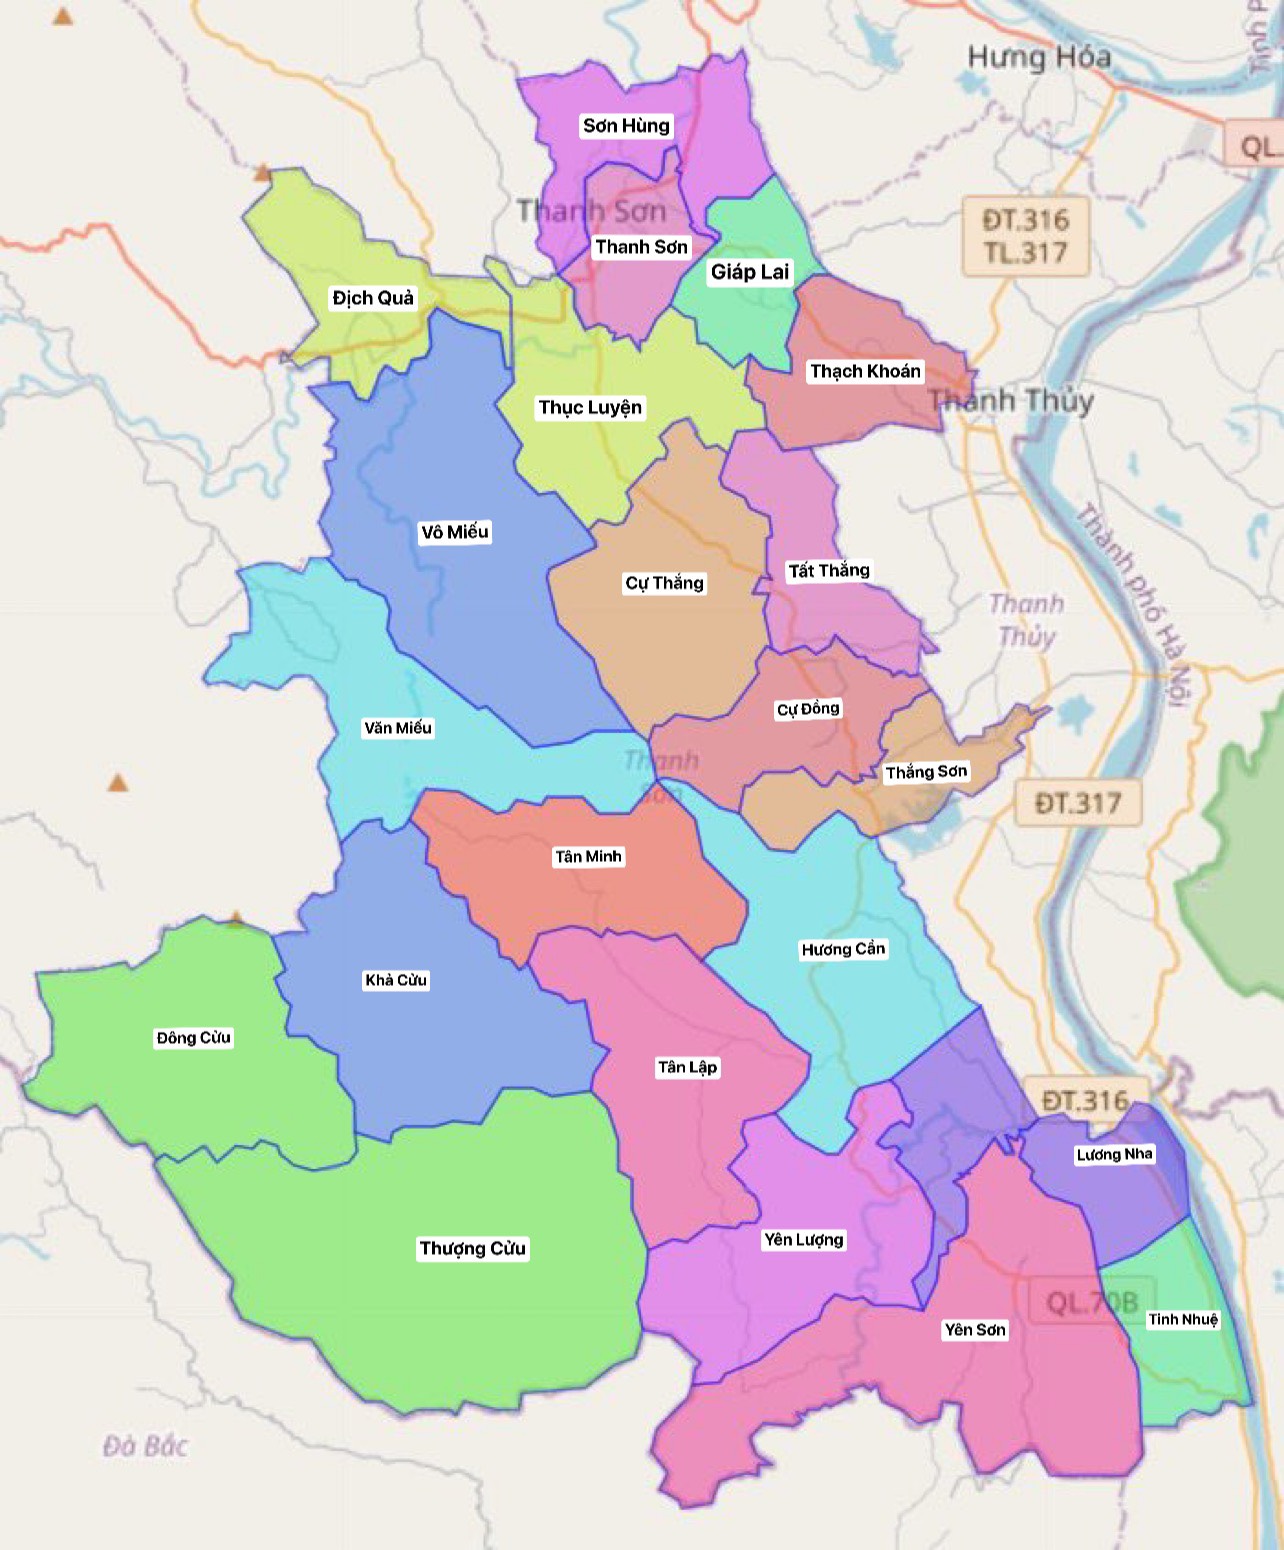 Bản đồ Huyện Thanh Sơn, Phú Thọ 2024: Khám phá bản đồ Huyện Thanh Sơn, Phú Thọ năm 2024 để cập nhật các thông tin mới nhất về phát triển kinh tế, xã hội và môi trường. Với kiến thức mới, bạn sẽ hiểu rõ hơn về tiềm năng và cơ hội đầu tư tại địa phương này.